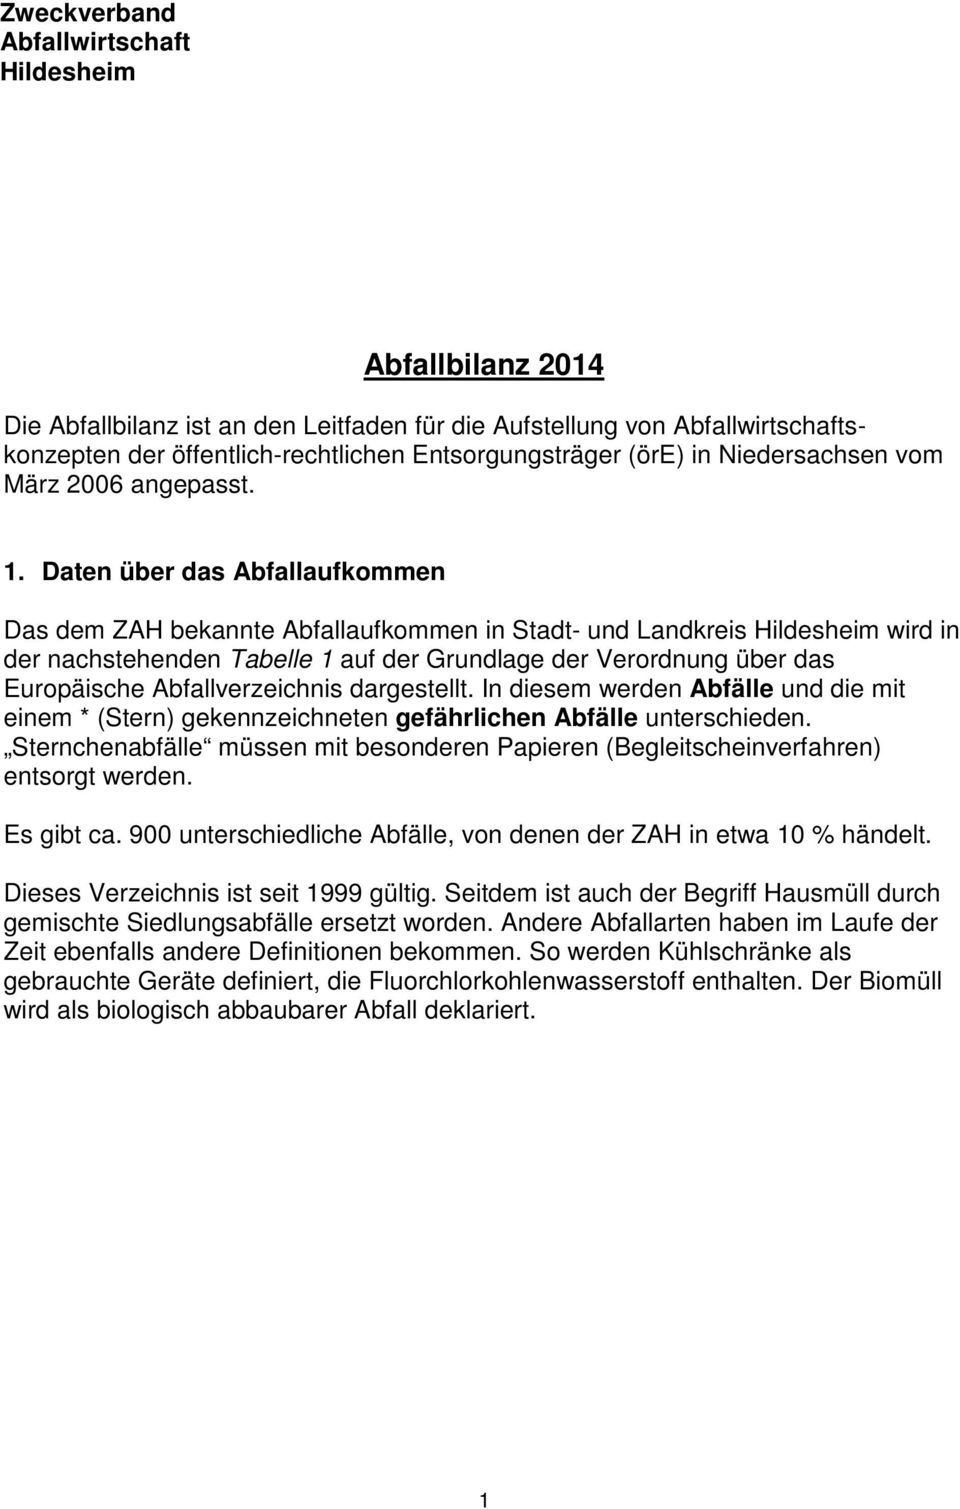 Daten über das Abfallaufkommen Das dem ZAH bekannte Abfallaufkommen in Stadt- und Landkreis Hildesheim wird in der nachstehenden Tabelle 1 auf der Grundlage der Verordnung über das Europäische